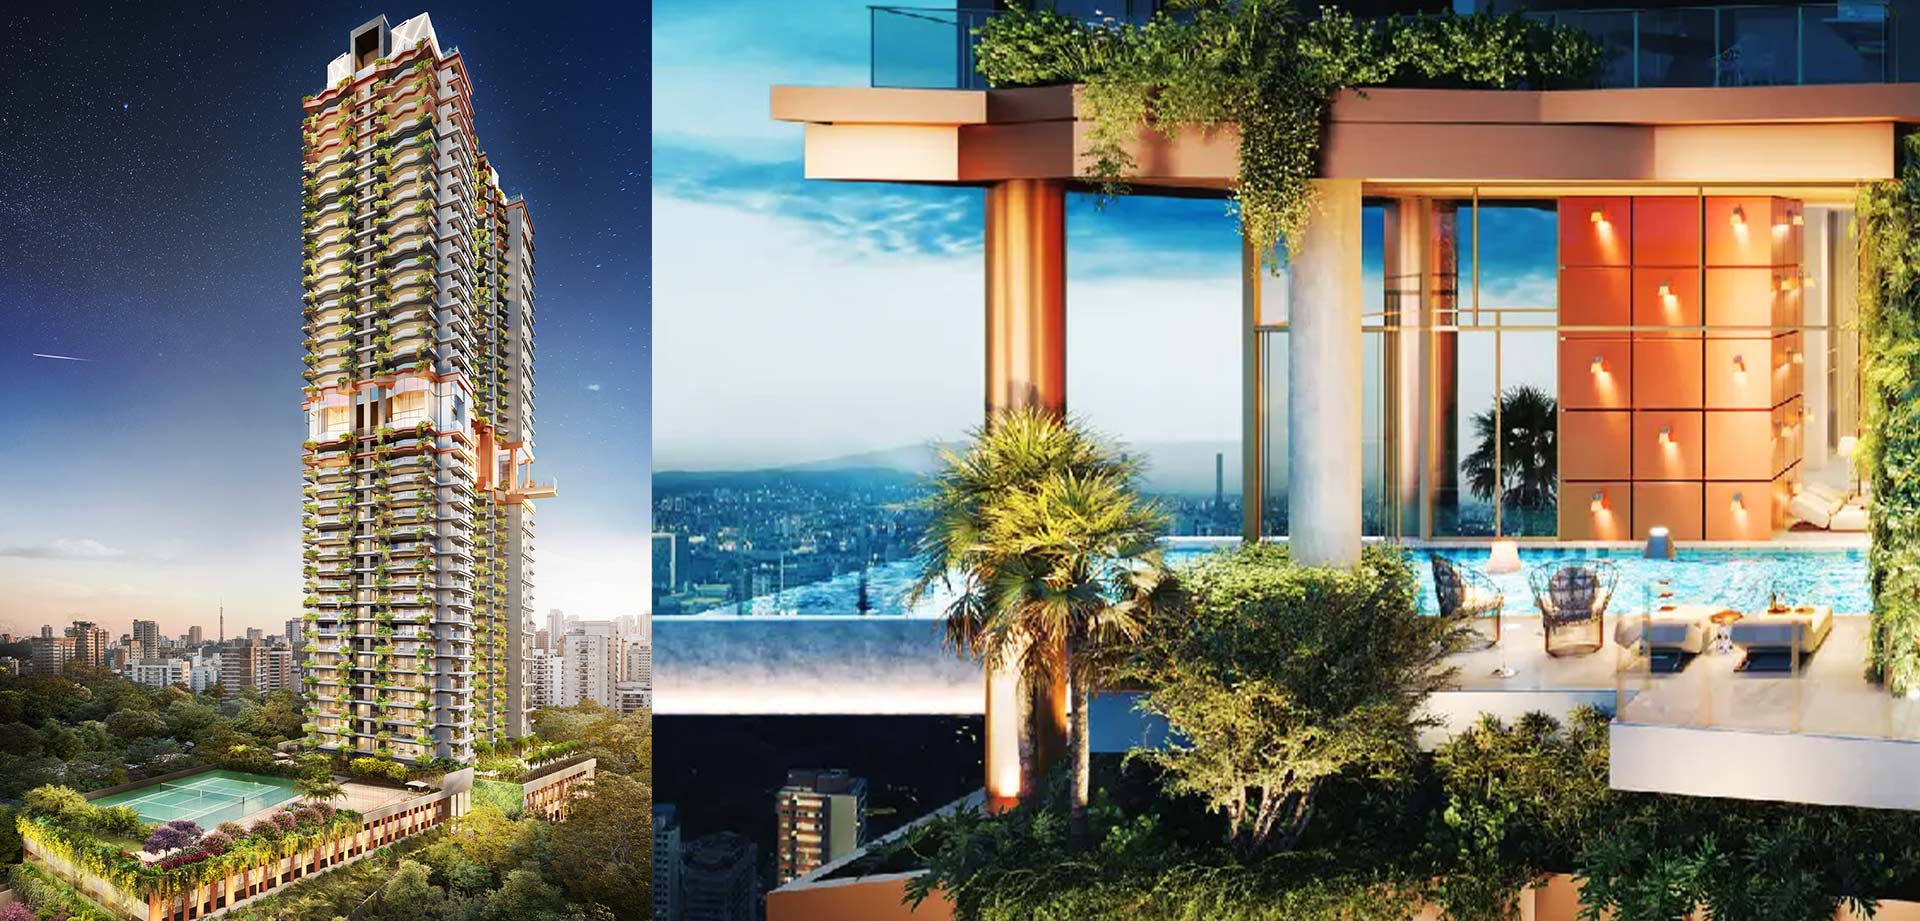 Projeto On the Sky by Yoo de 42 andares da Cyrela será entregue em 2027 com metro quadrado em torno de R$ 15,9 mil.